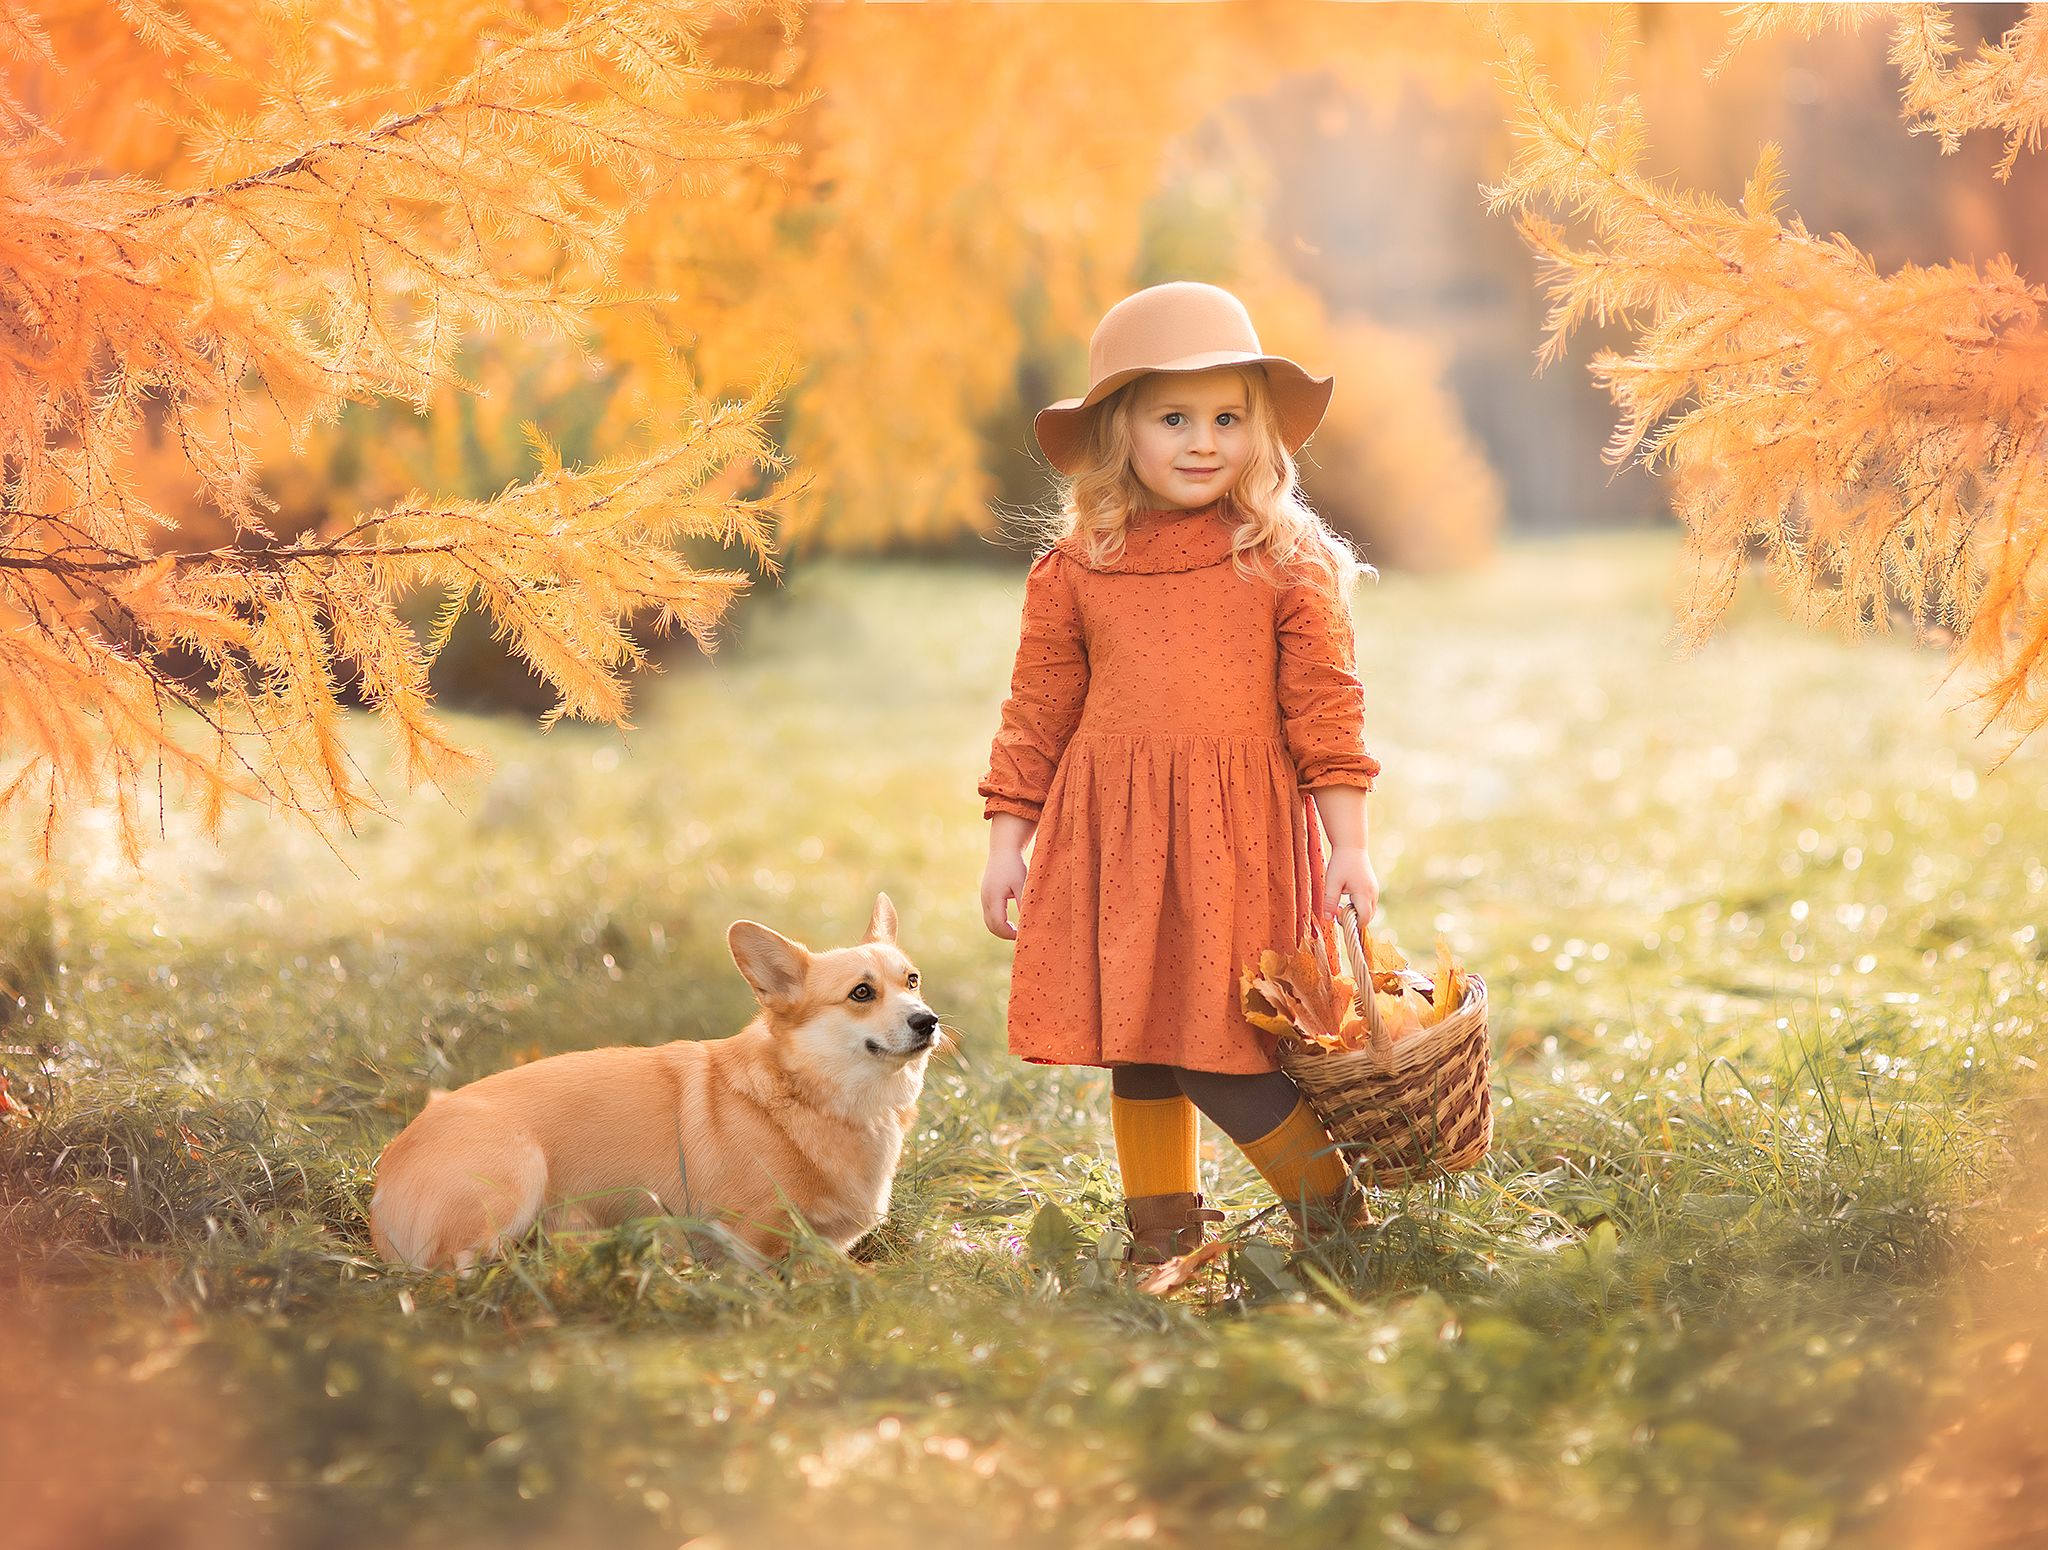 елена мамрукова, детский фотограф, осенняя фотосессия, осень, собака, природа, золотая осень, Елена Мамрукова